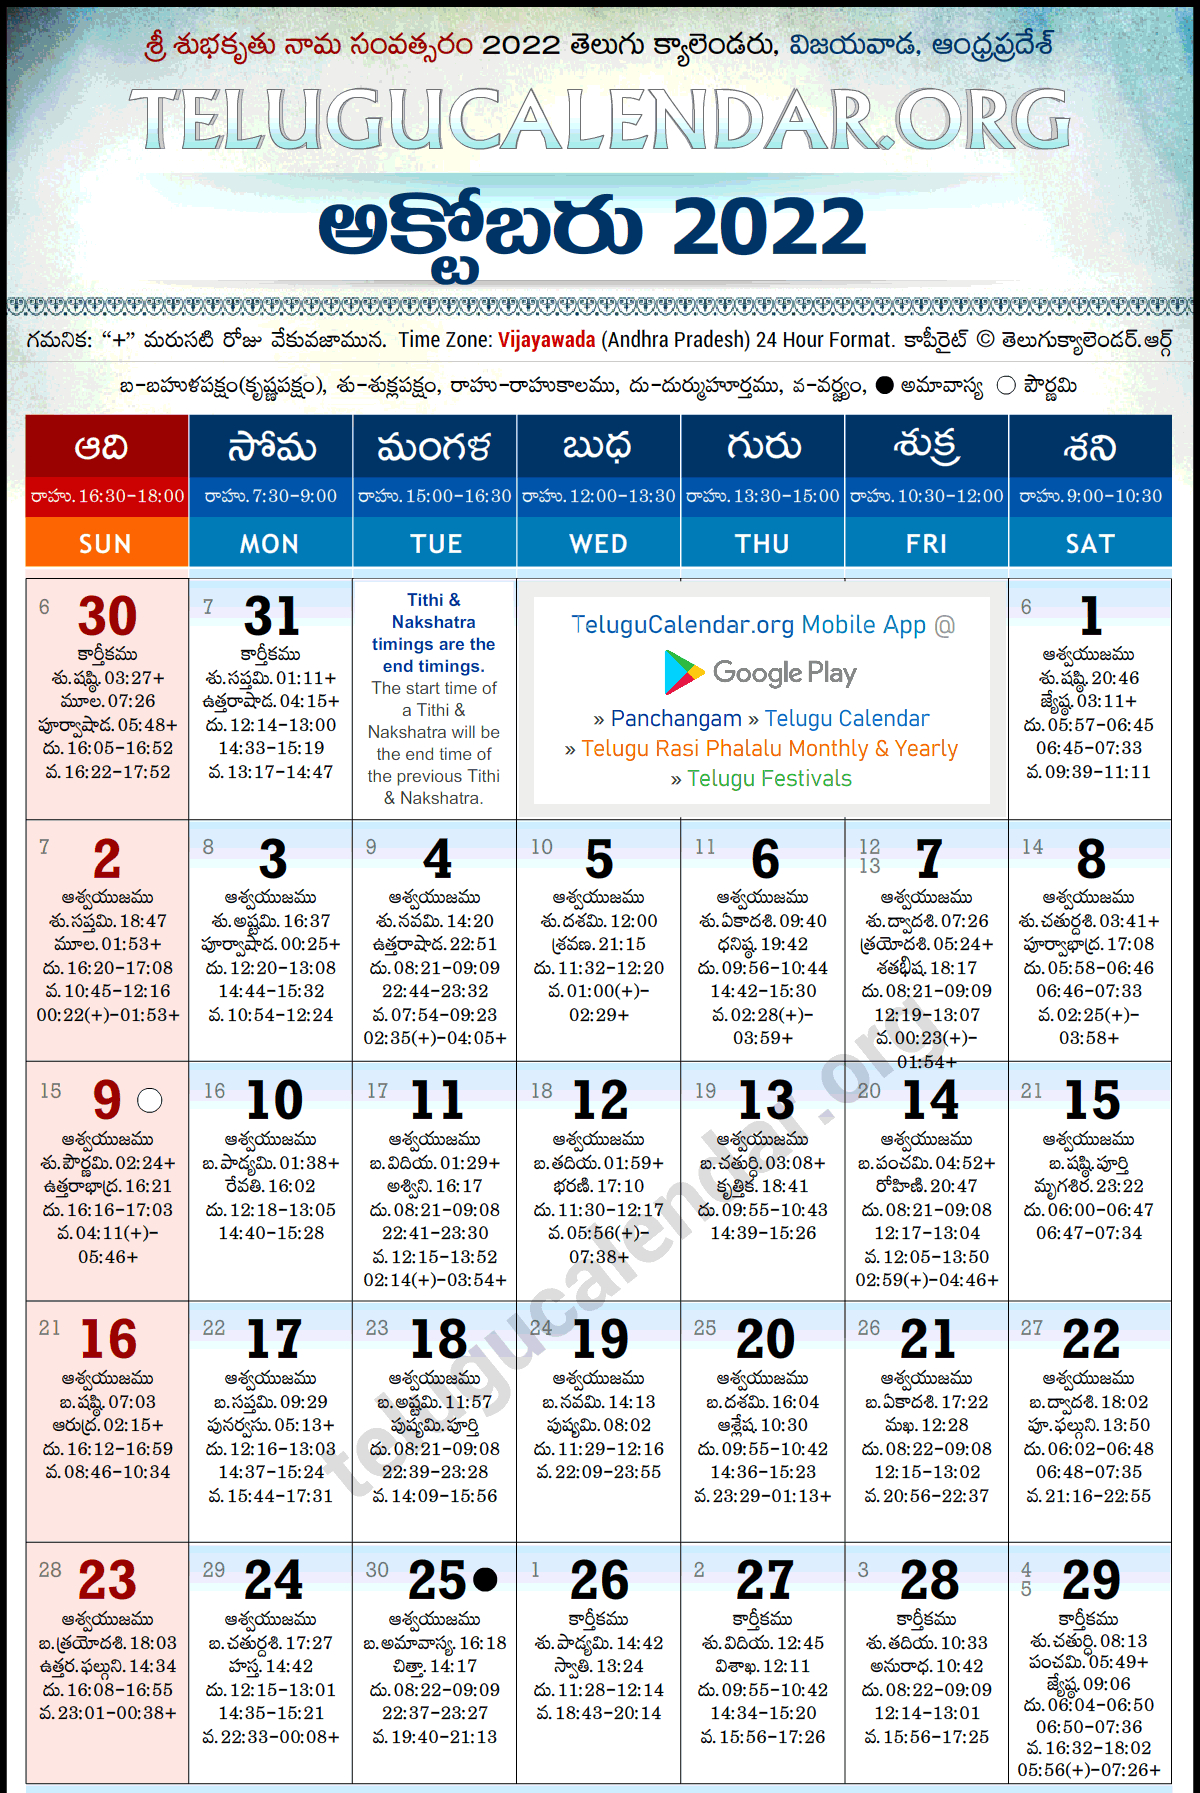 October Telugu Calendar 2022 - November Calendar 2022